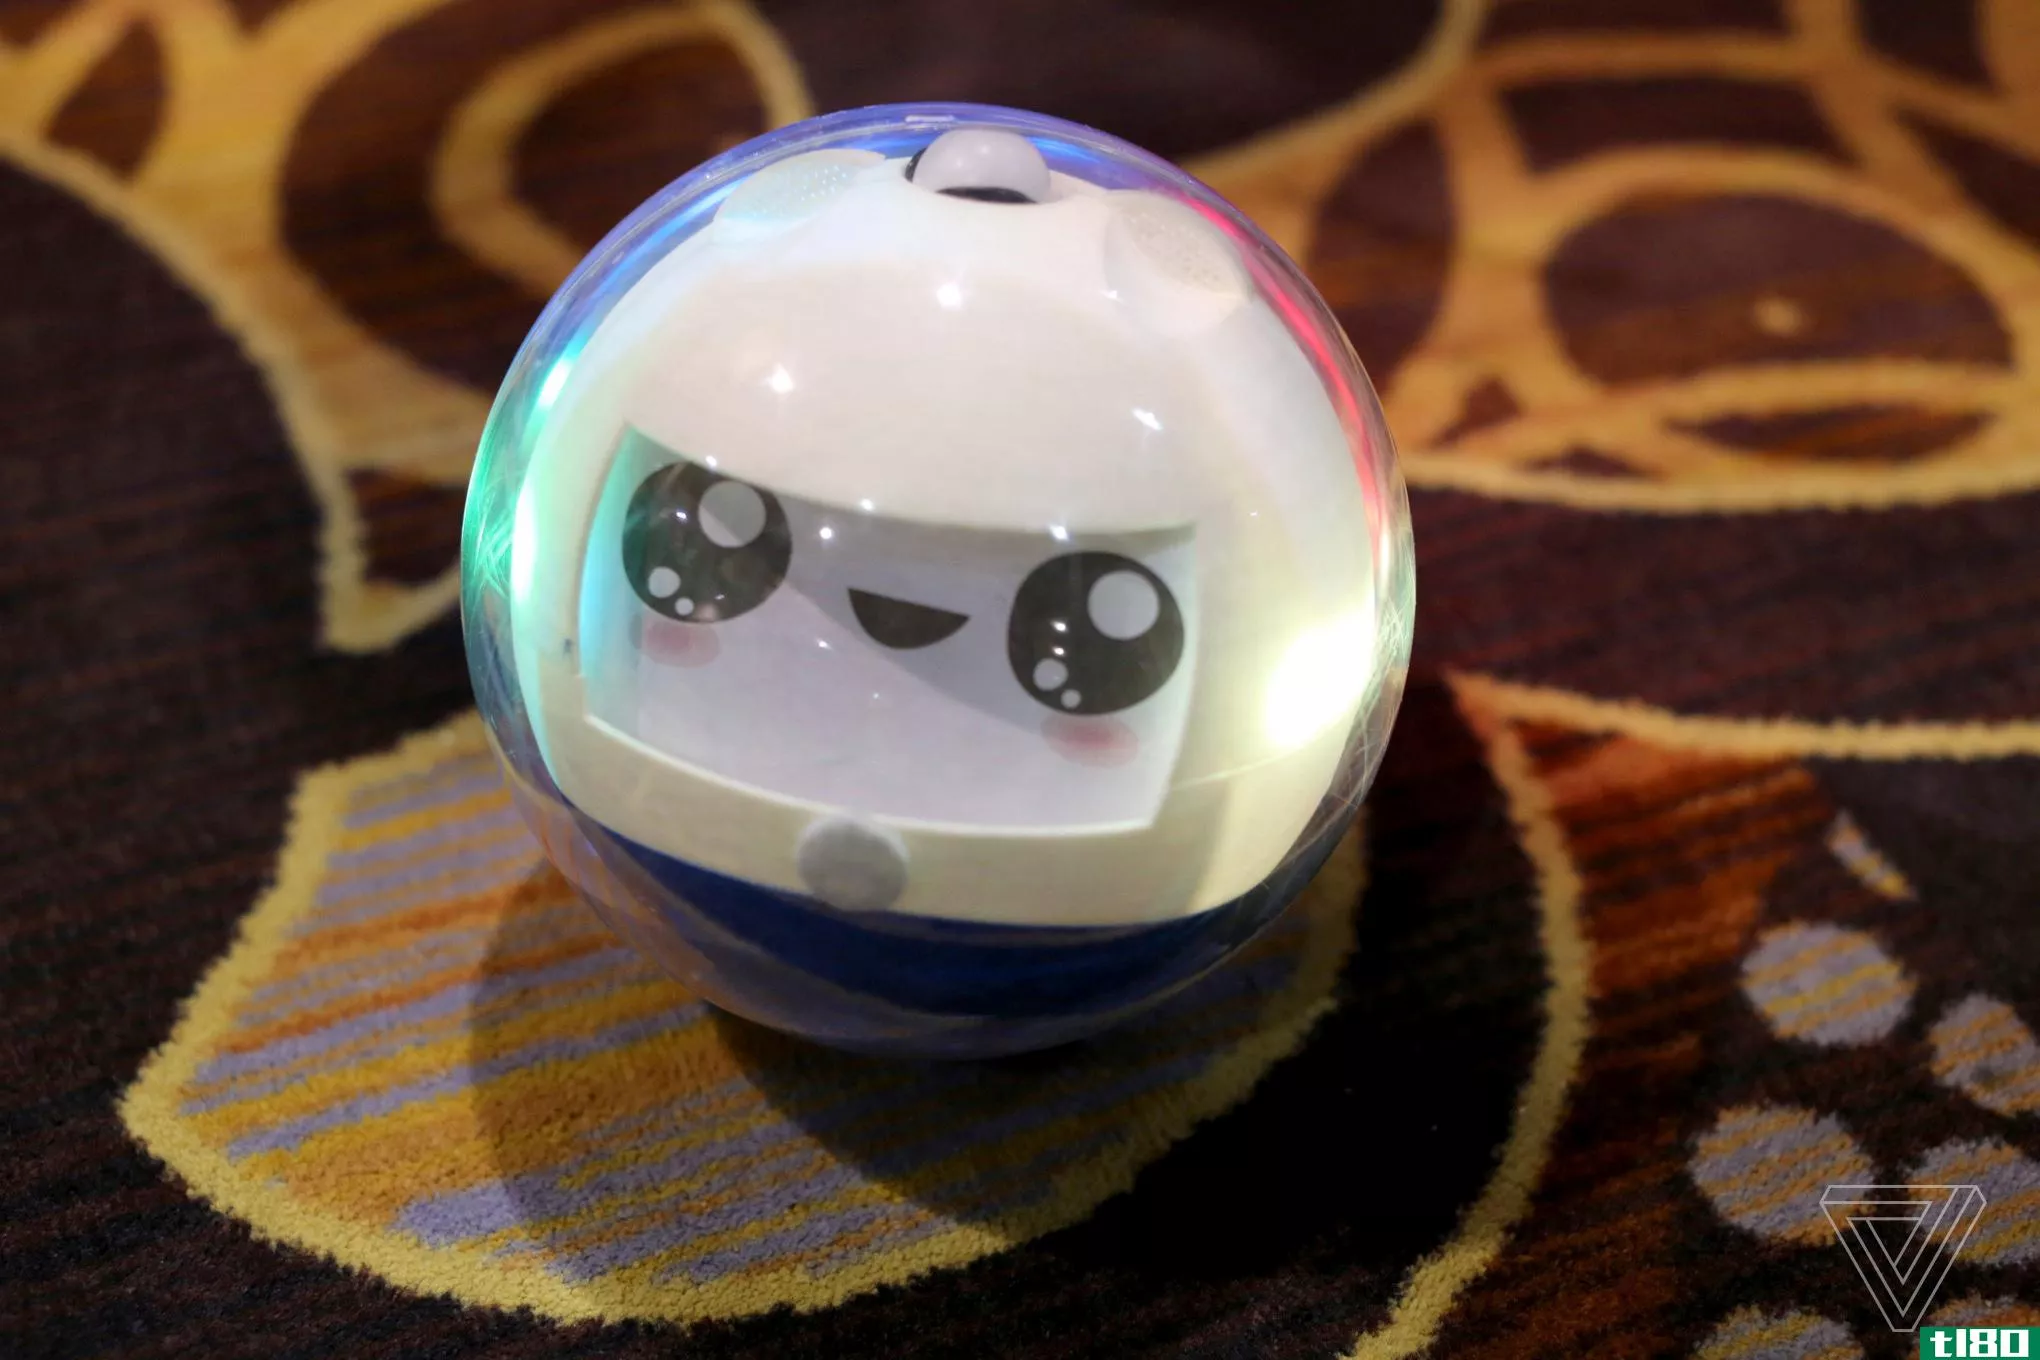 leka智能玩具是一款为发育障碍儿童设计的机器人